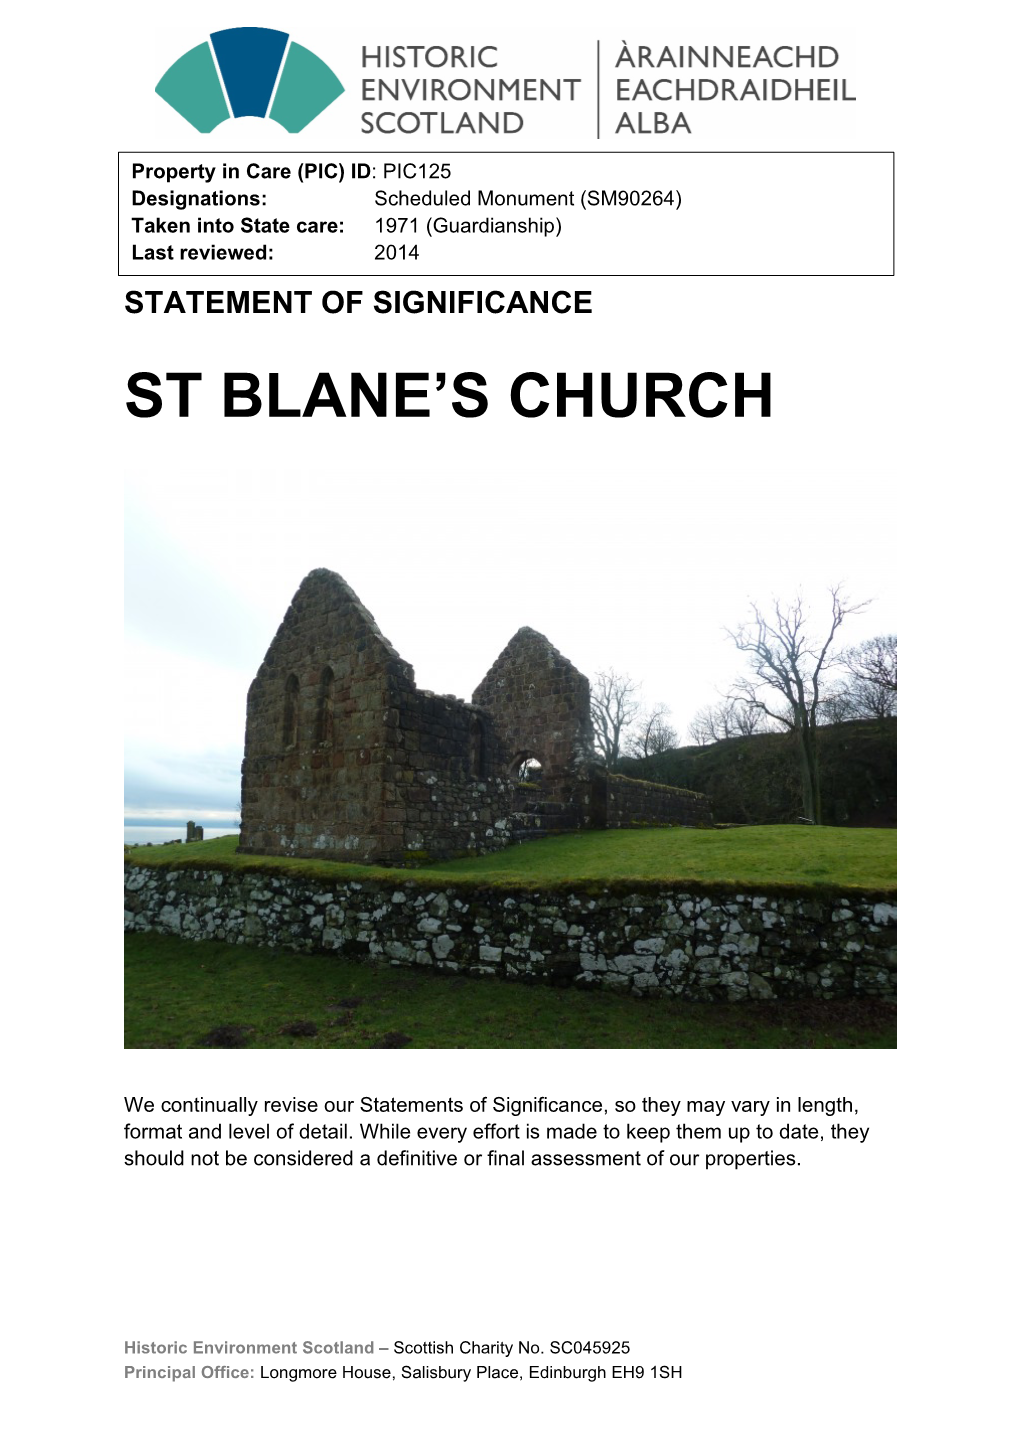 St Blane's Church